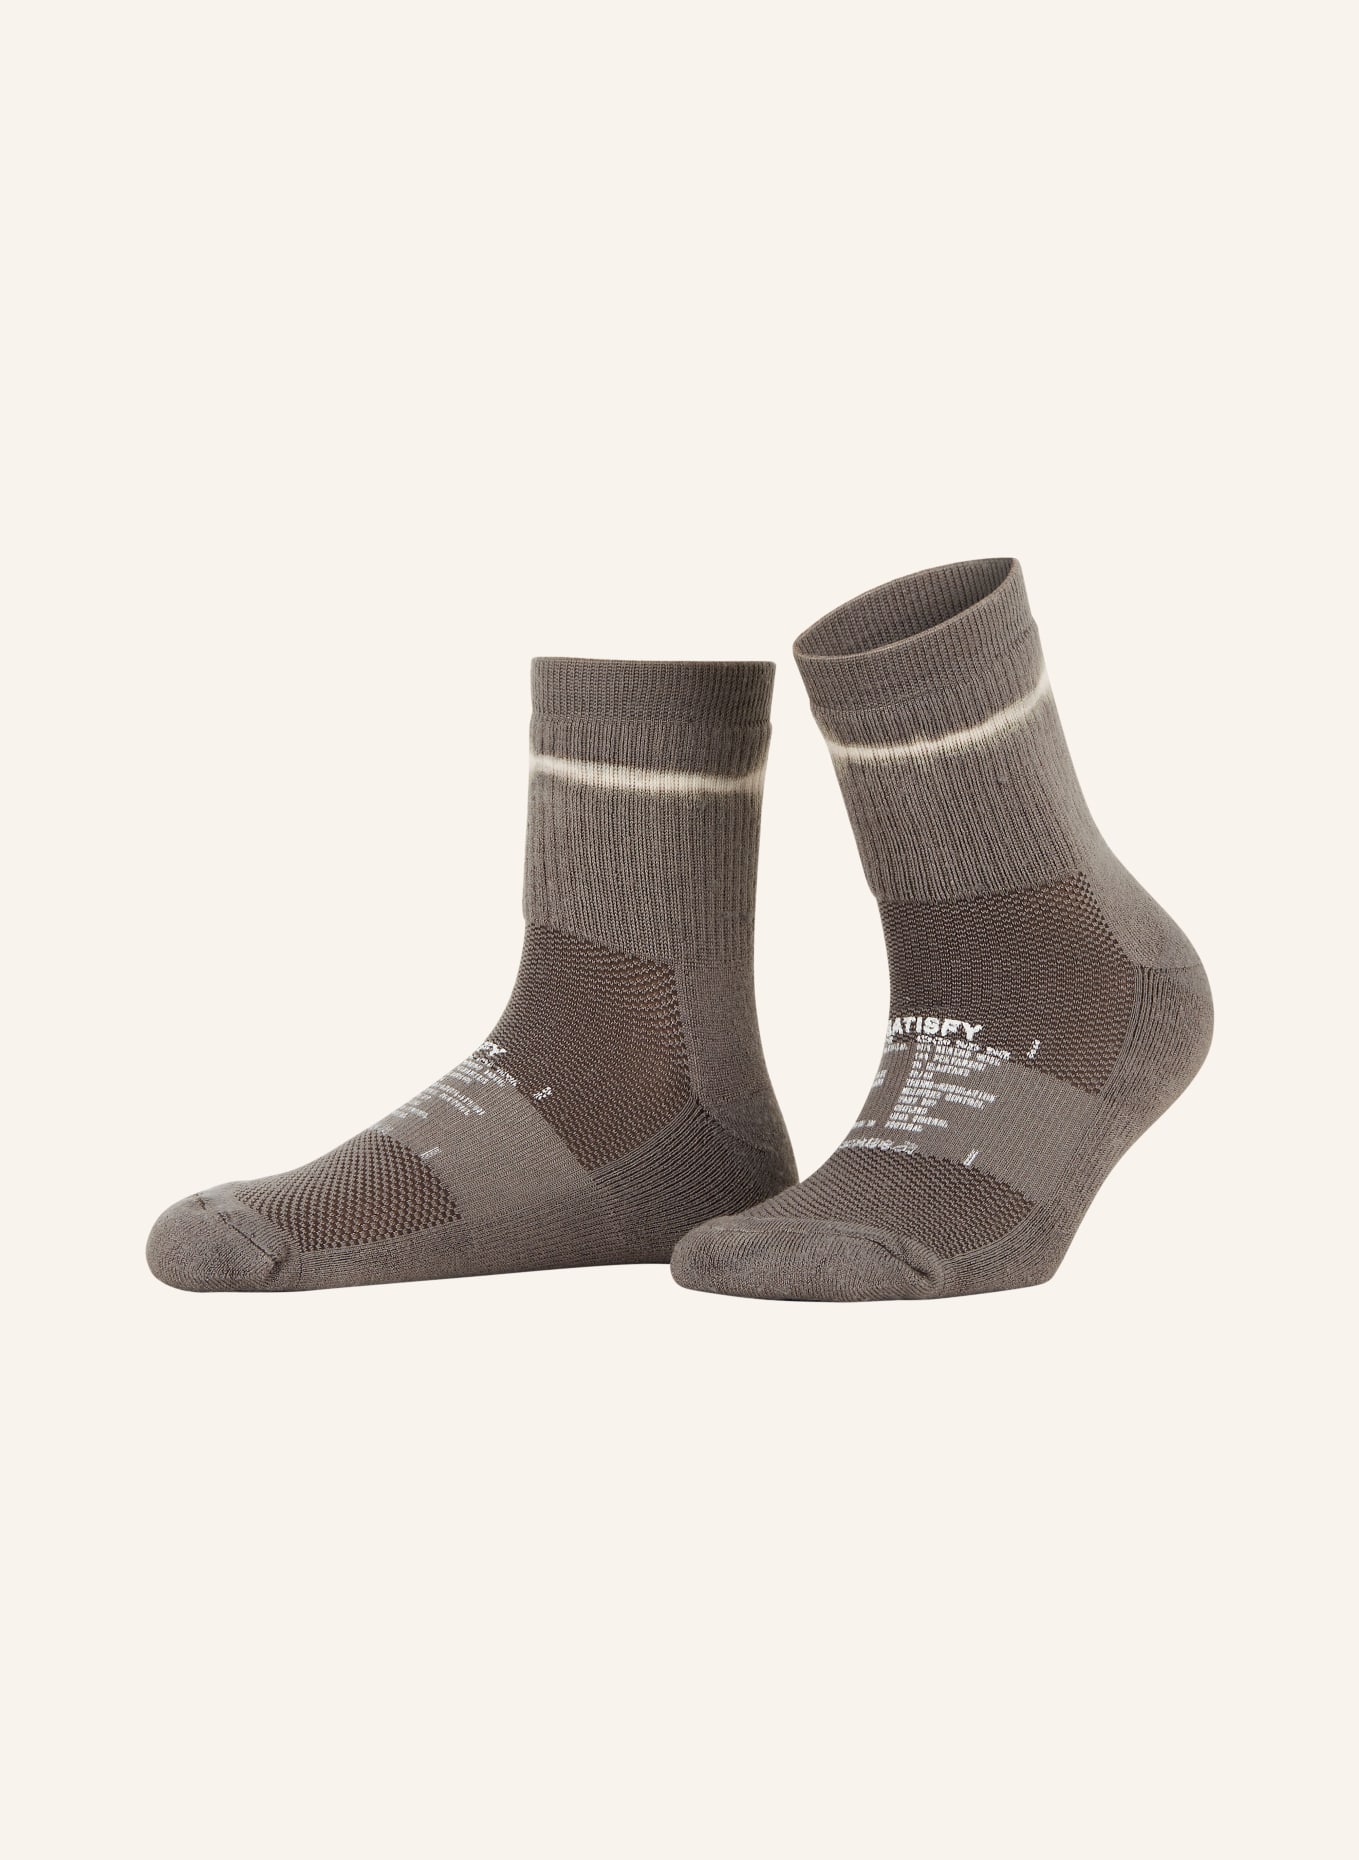 SATISFY Sports socks TIE DYE in merino wool, Color: Morel Tie Dye (Image 1)